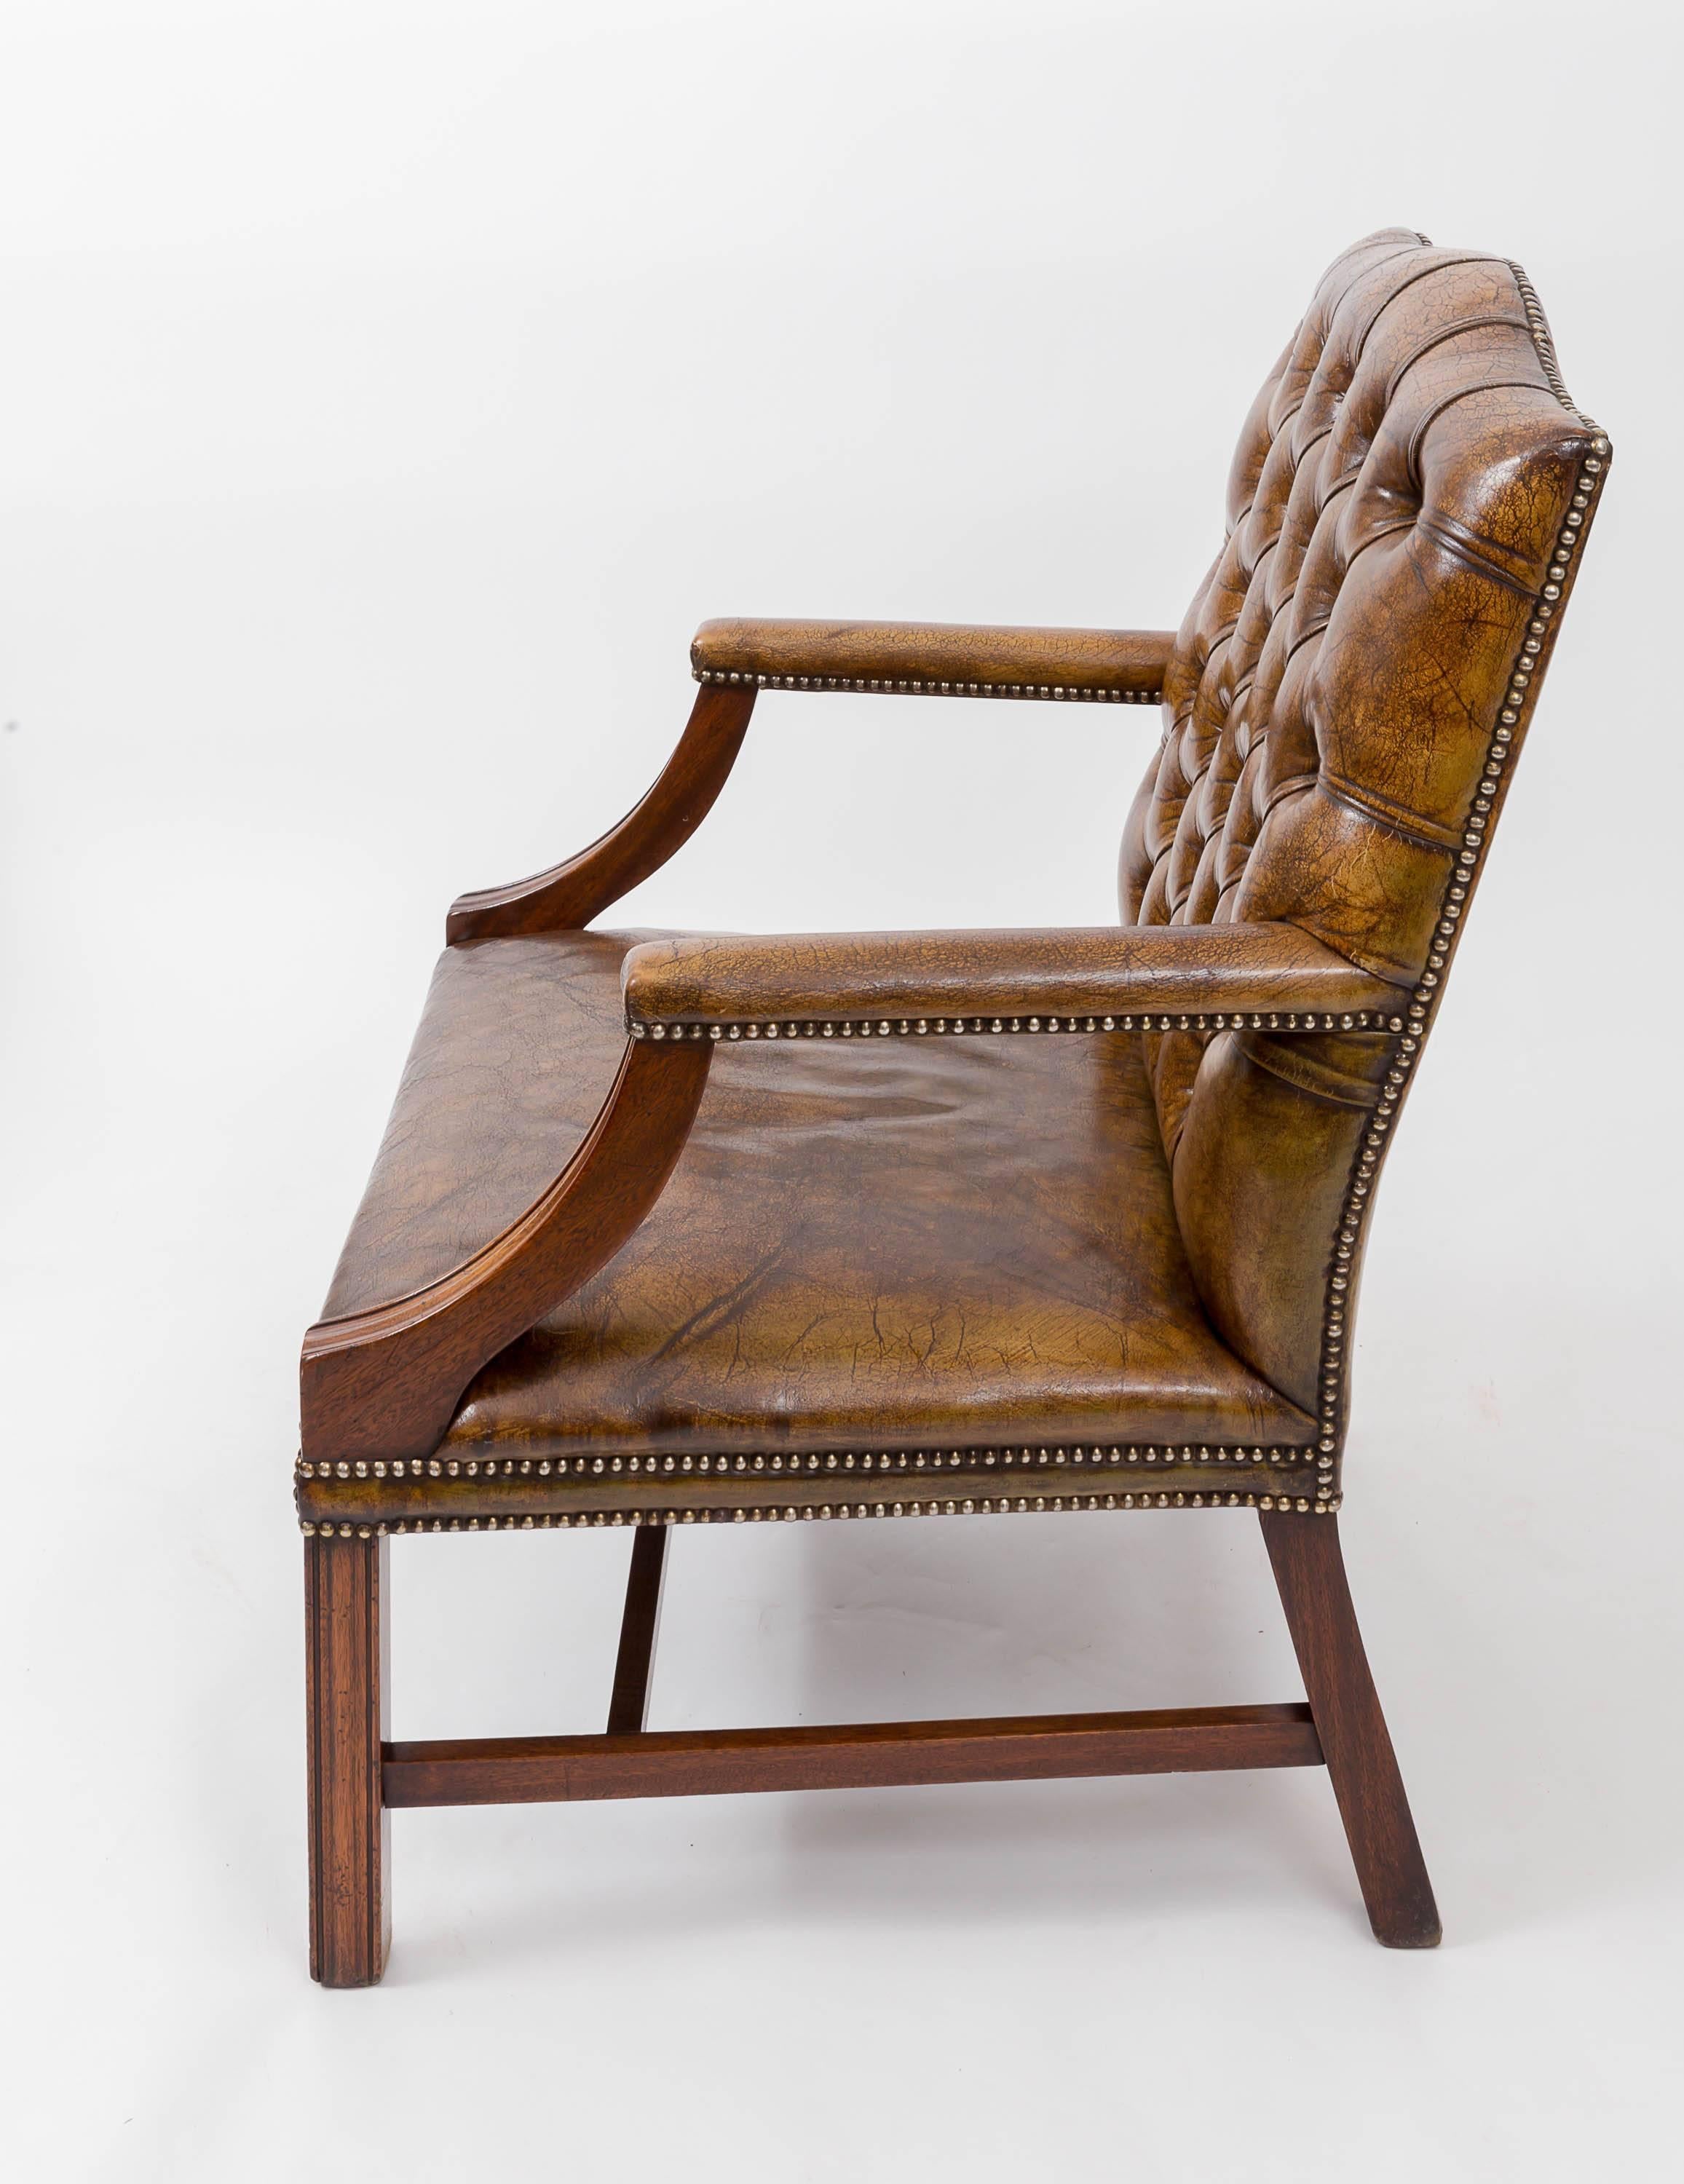 gainsborough chair